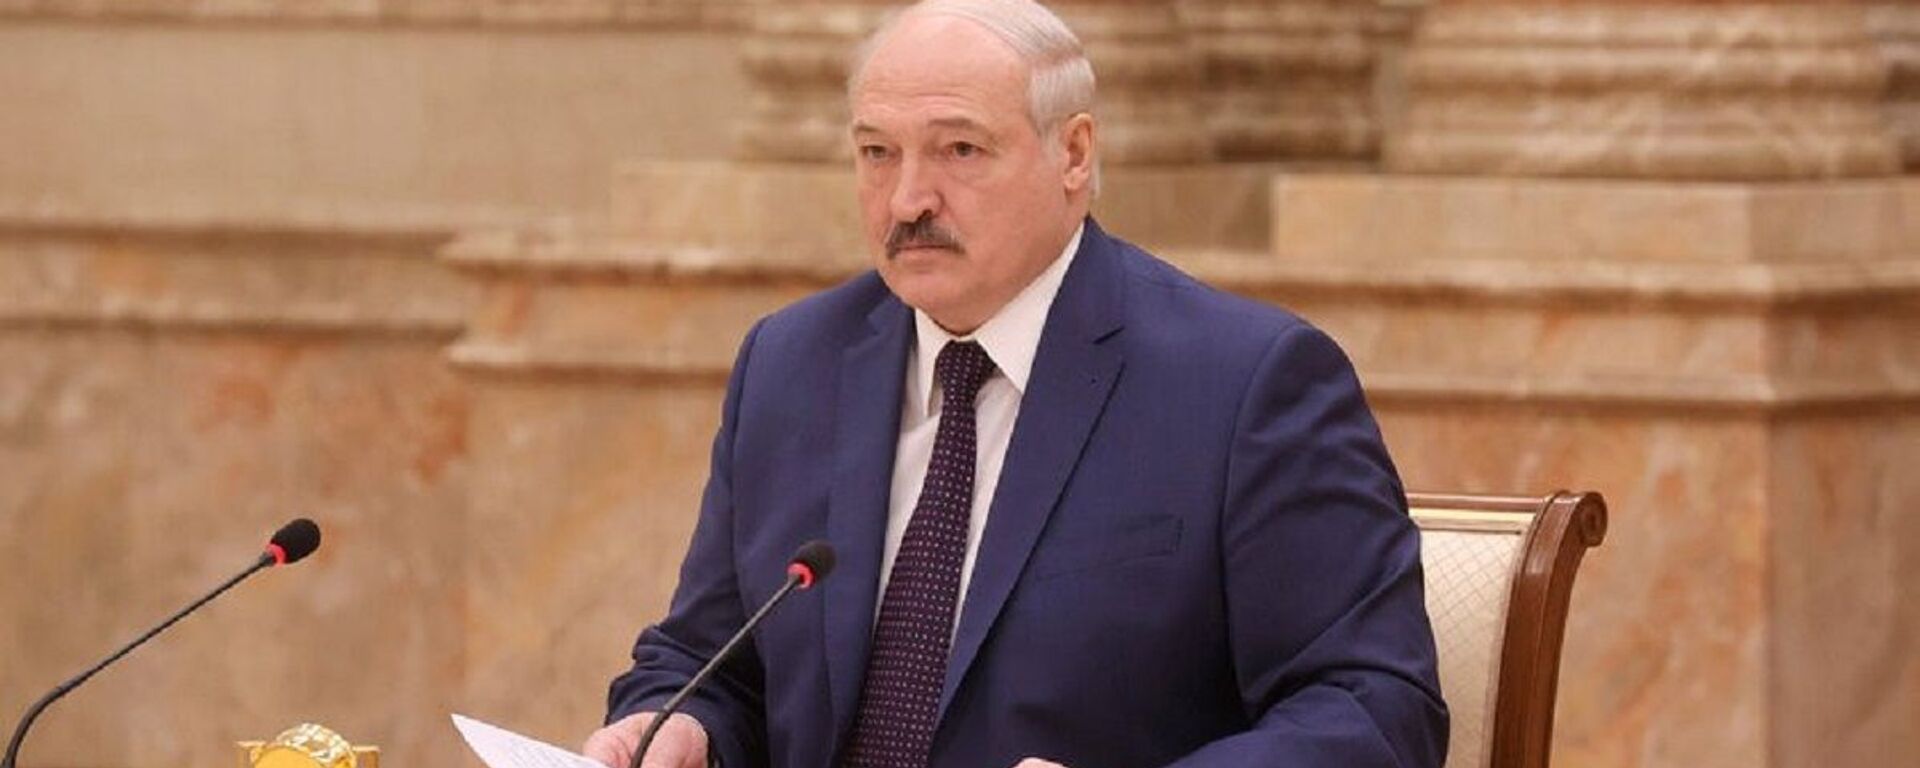 Лукашенко рассказал о работе комиссии над изменениями в Конституции - Sputnik Беларусь, 1920, 30.03.2021